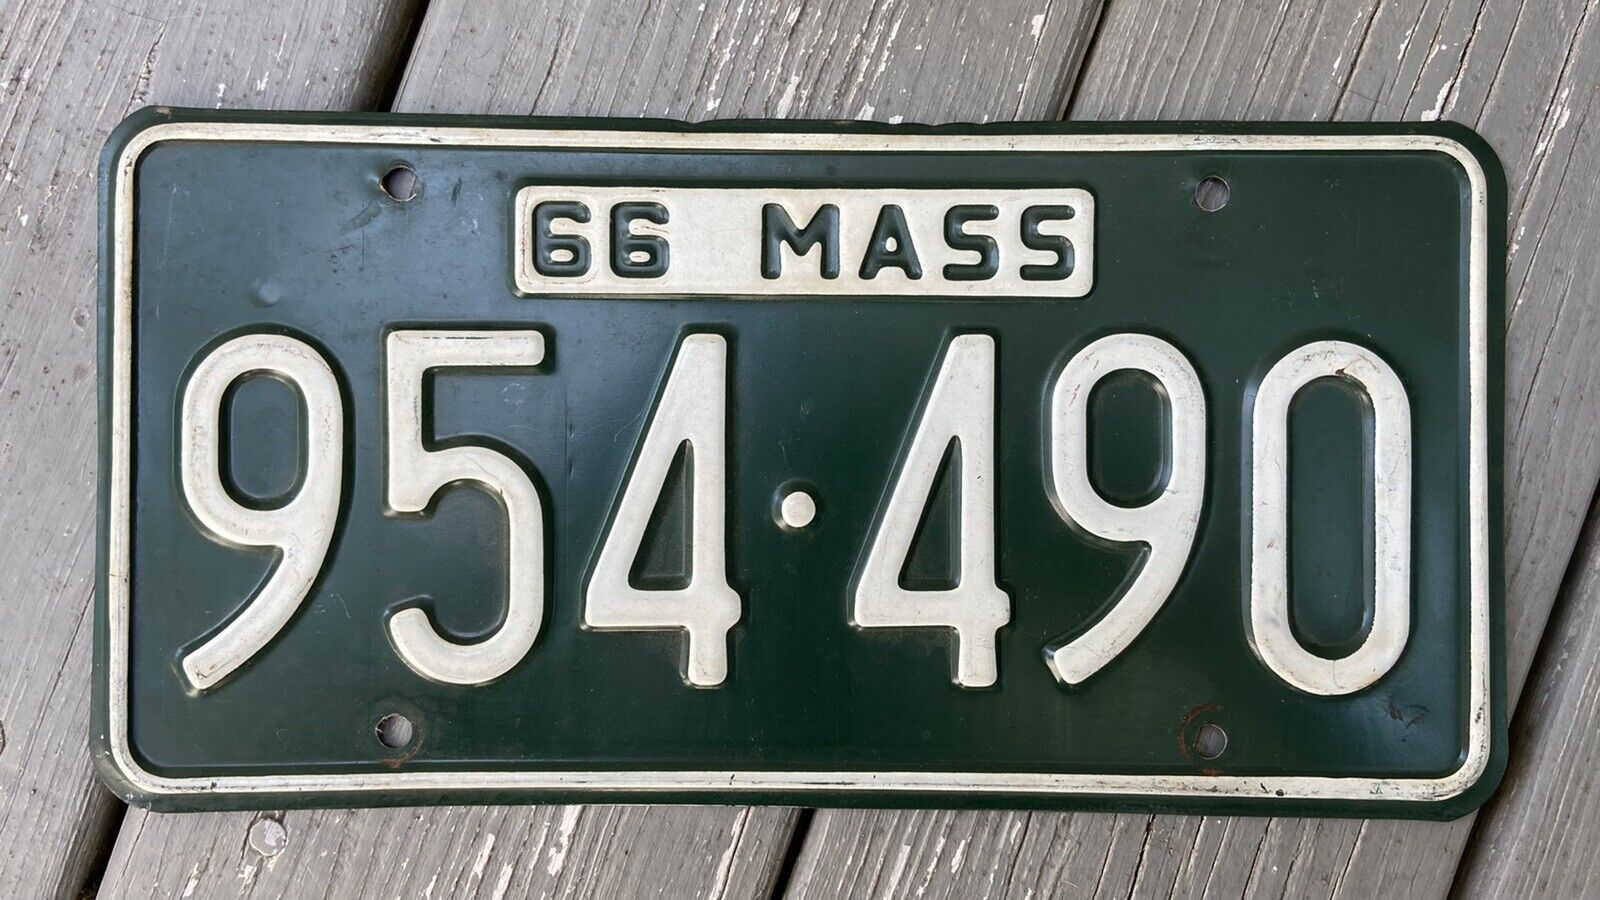 1966 Massachusetts License Plate White on Green 954 490 Excellent